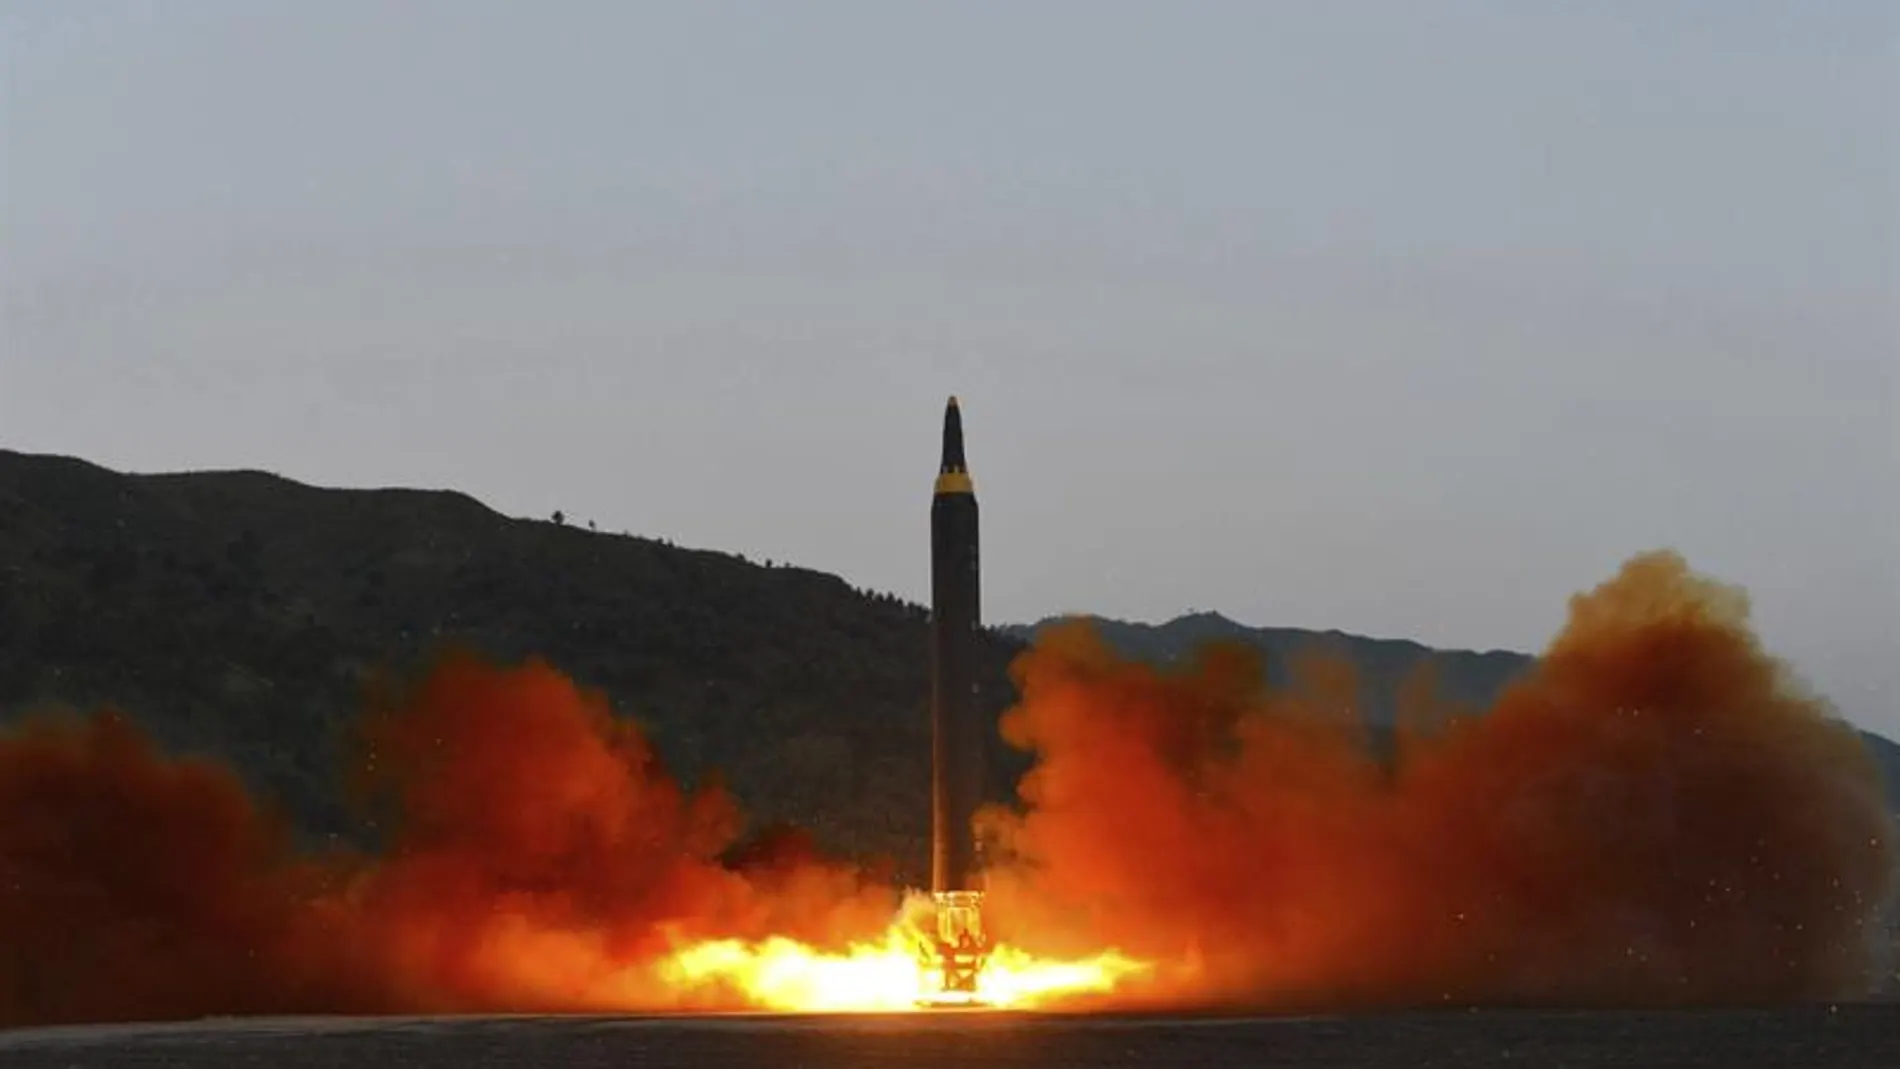 Fotografía que muestra el lanzamiento de un misil en Corea del Norte